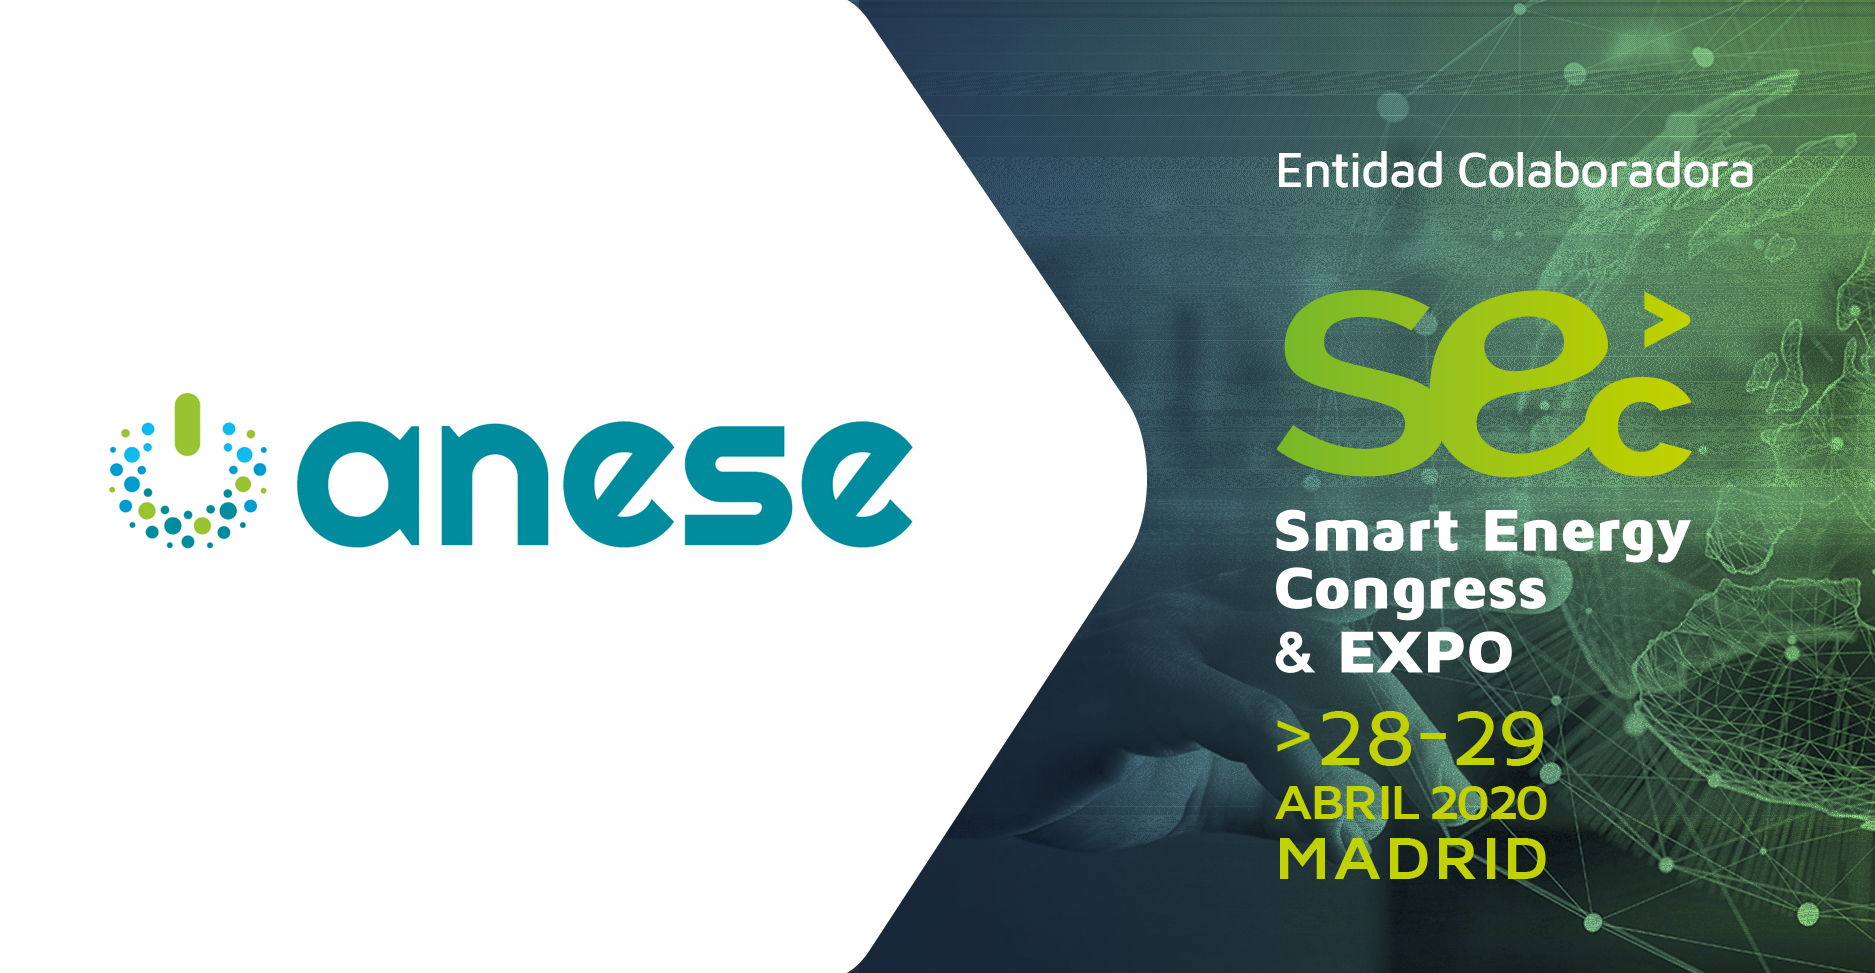 Smart Energy Congress & EXPO: Digitalización, energía y clima, impulsan una edición especial en Madrid del SmartEnergyCongress.eu para 2020 